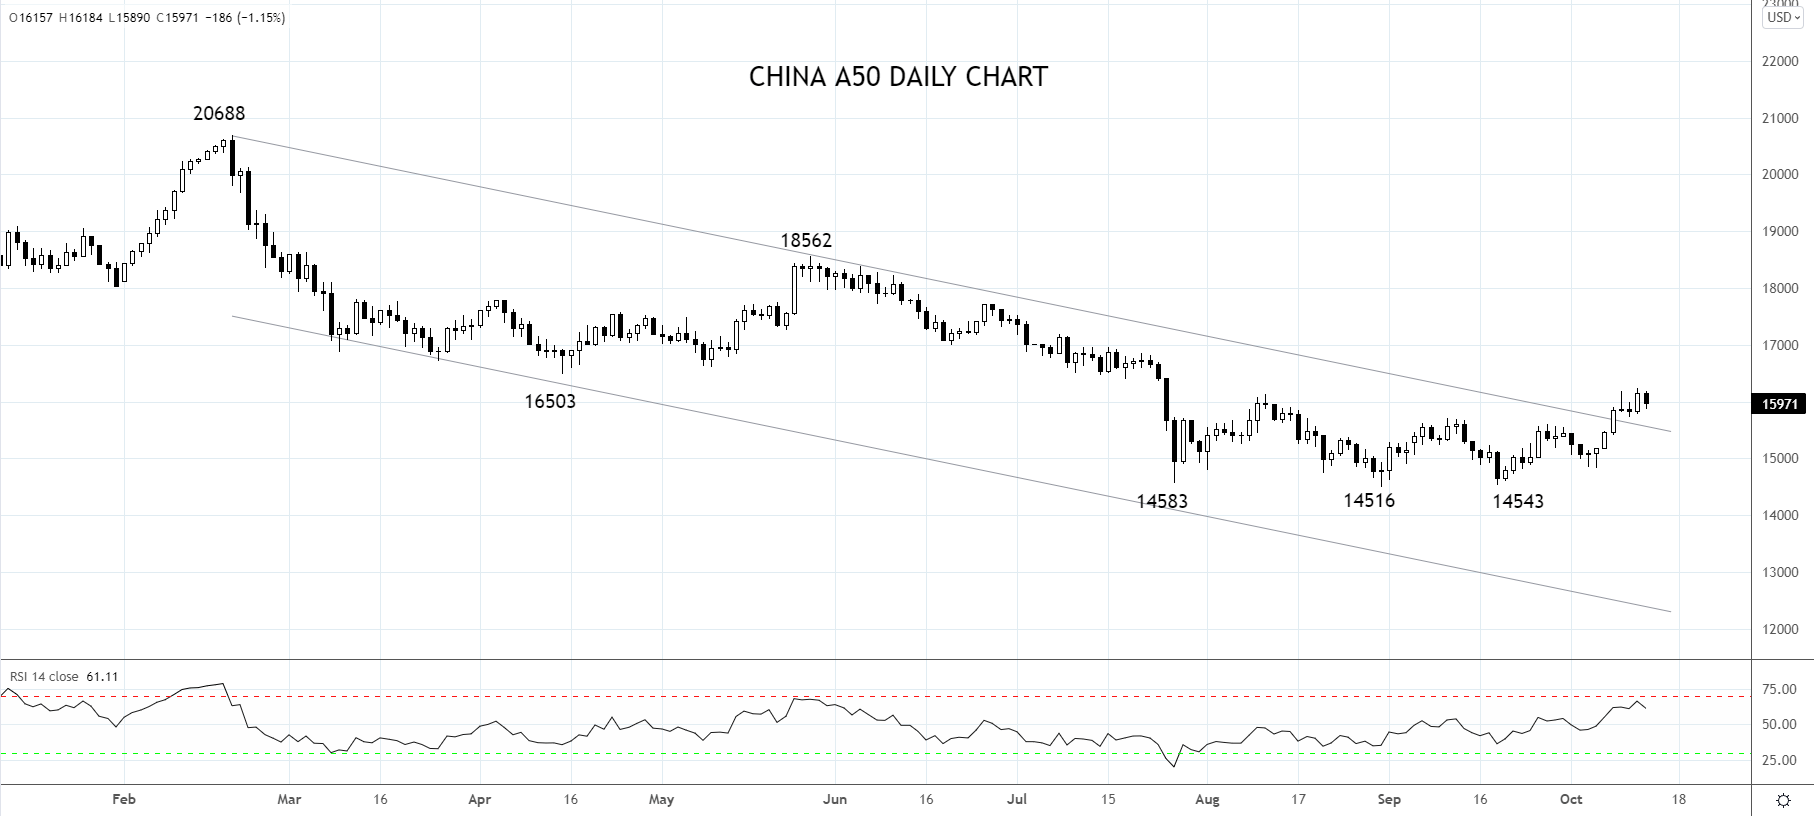 China A50 Daily chart